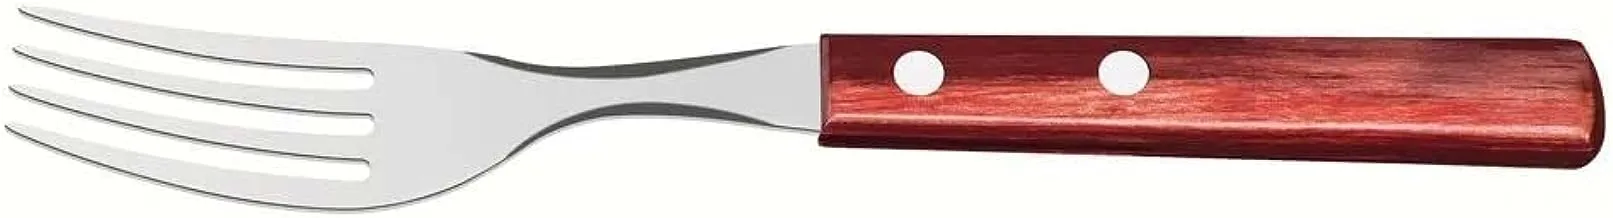 سكين طهي ترامونتينا مقاس 10 بوصات مع شفرة من الفولاذ المقاوم للصدأ ومقبض آمن للاستخدام في غسالة الأطباق من بوليوود